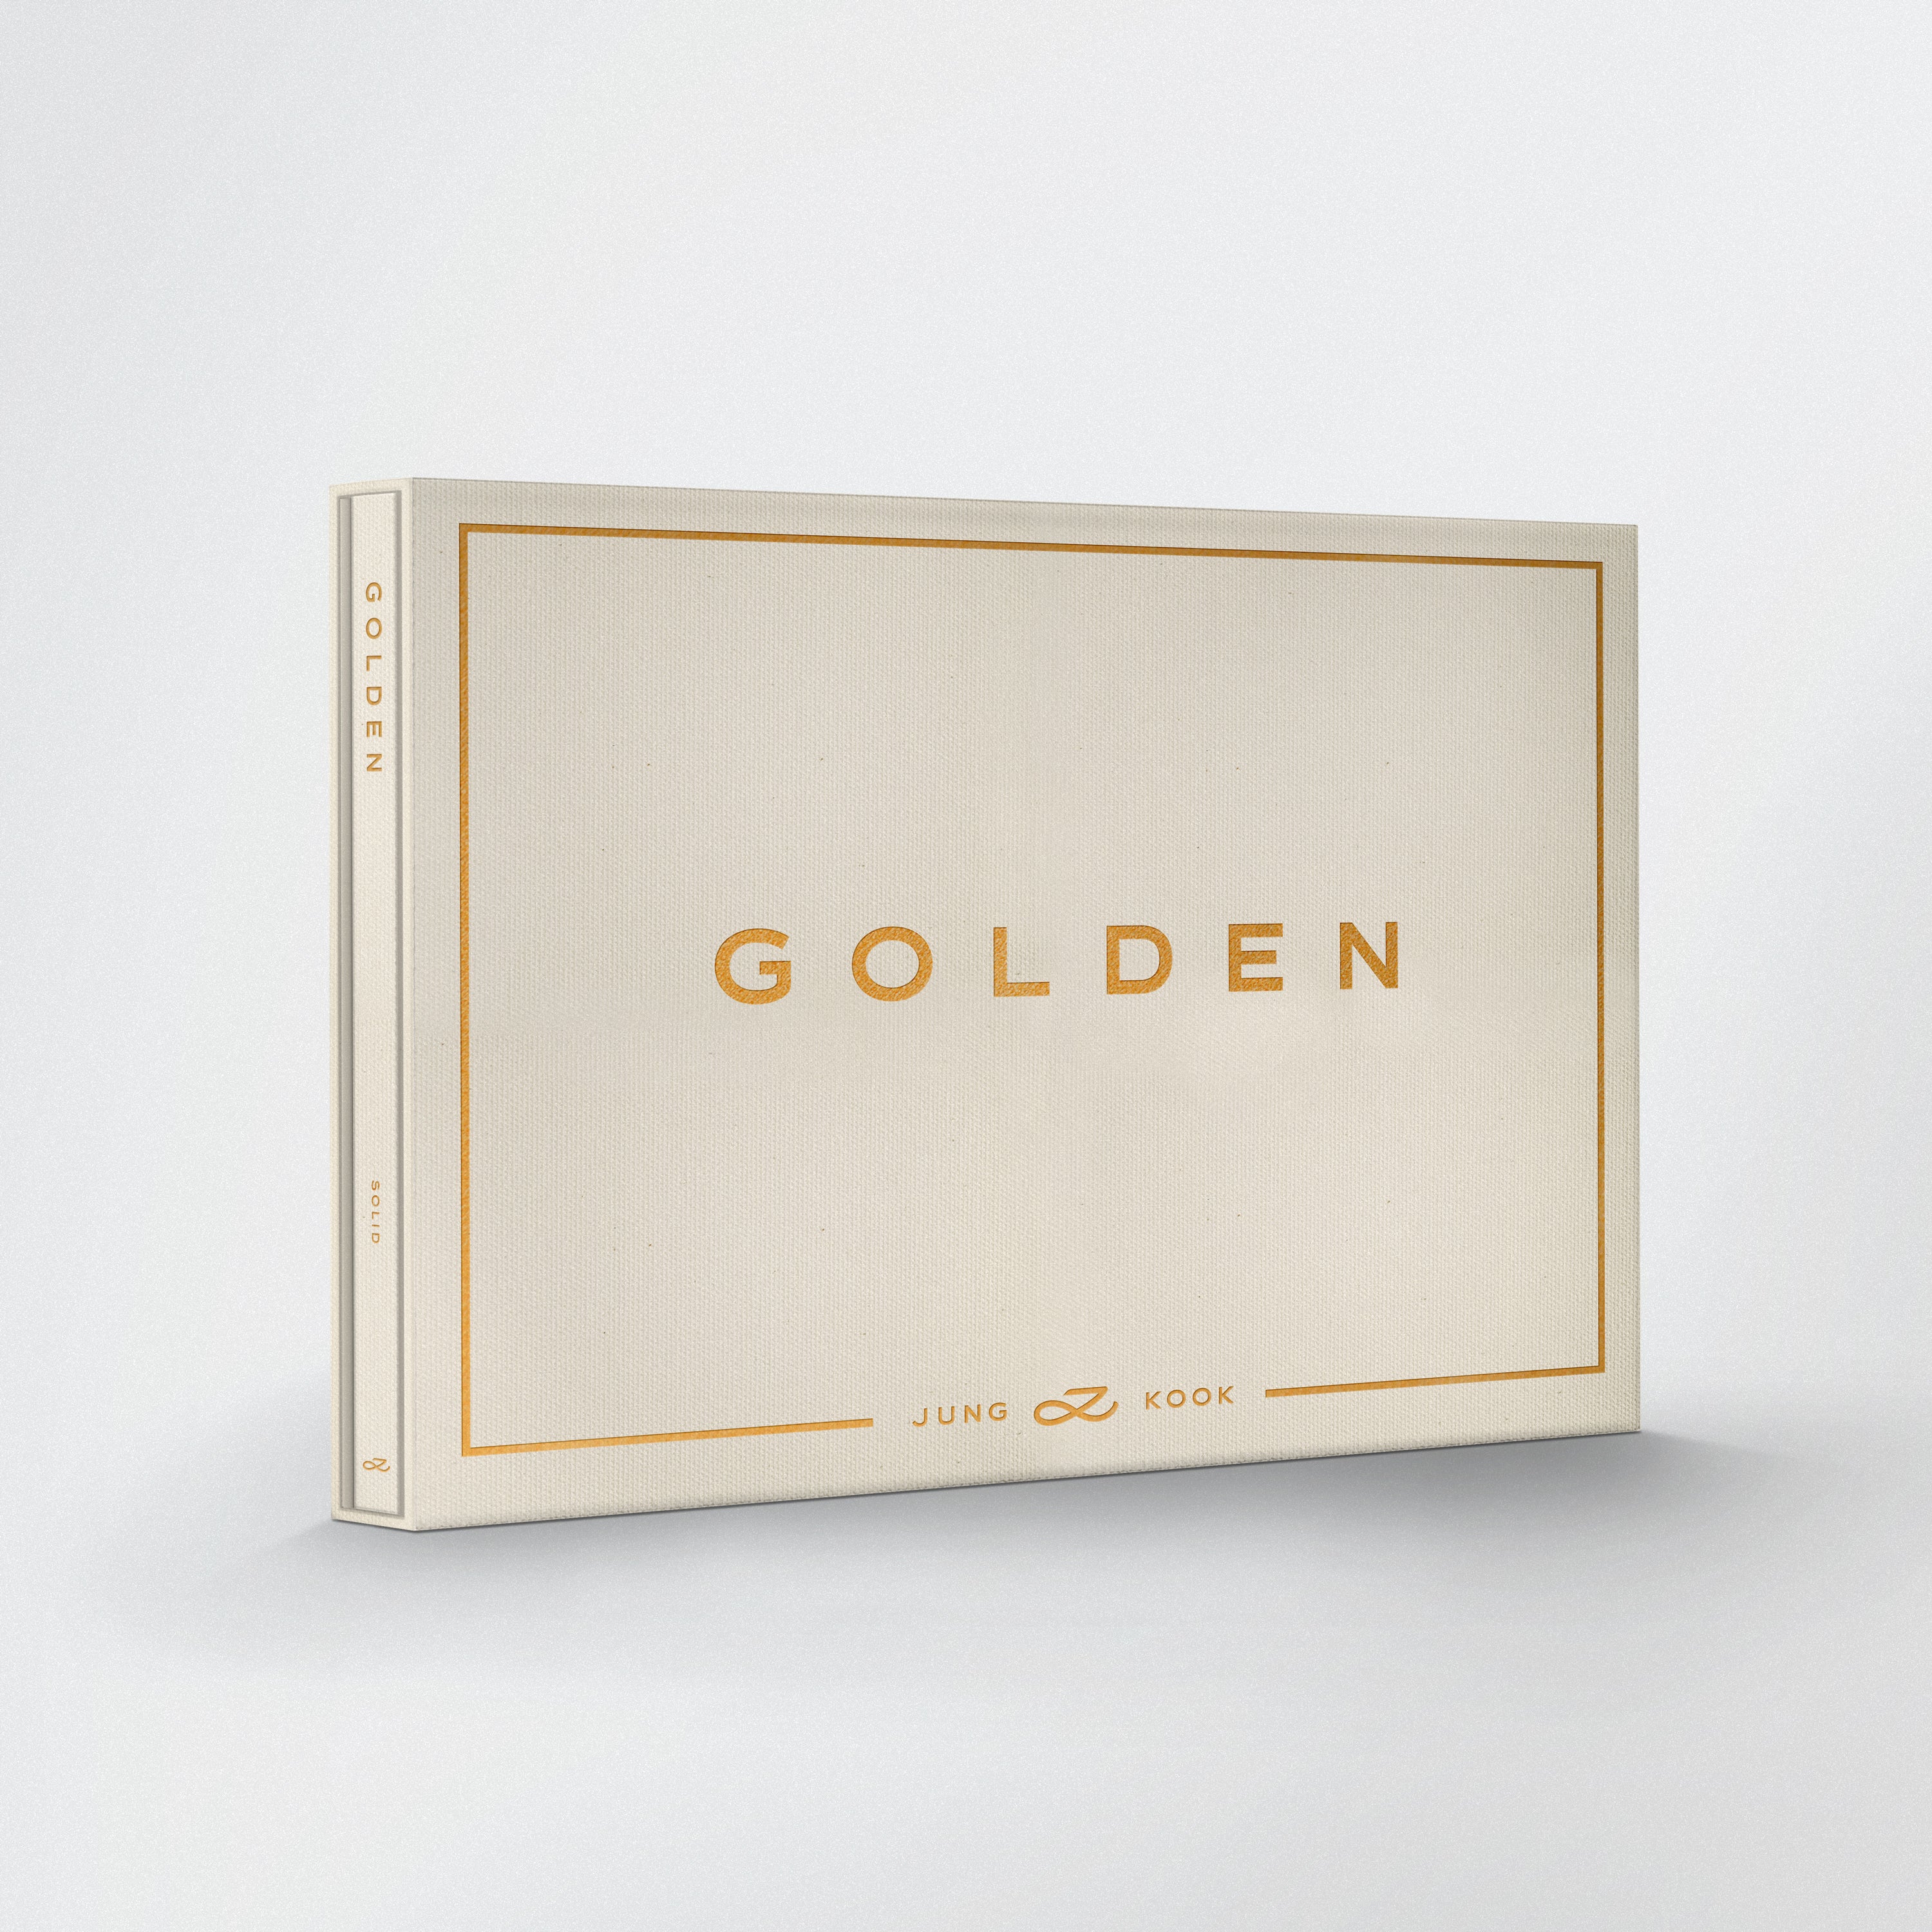 Jung Kook - Golden (SOLID)